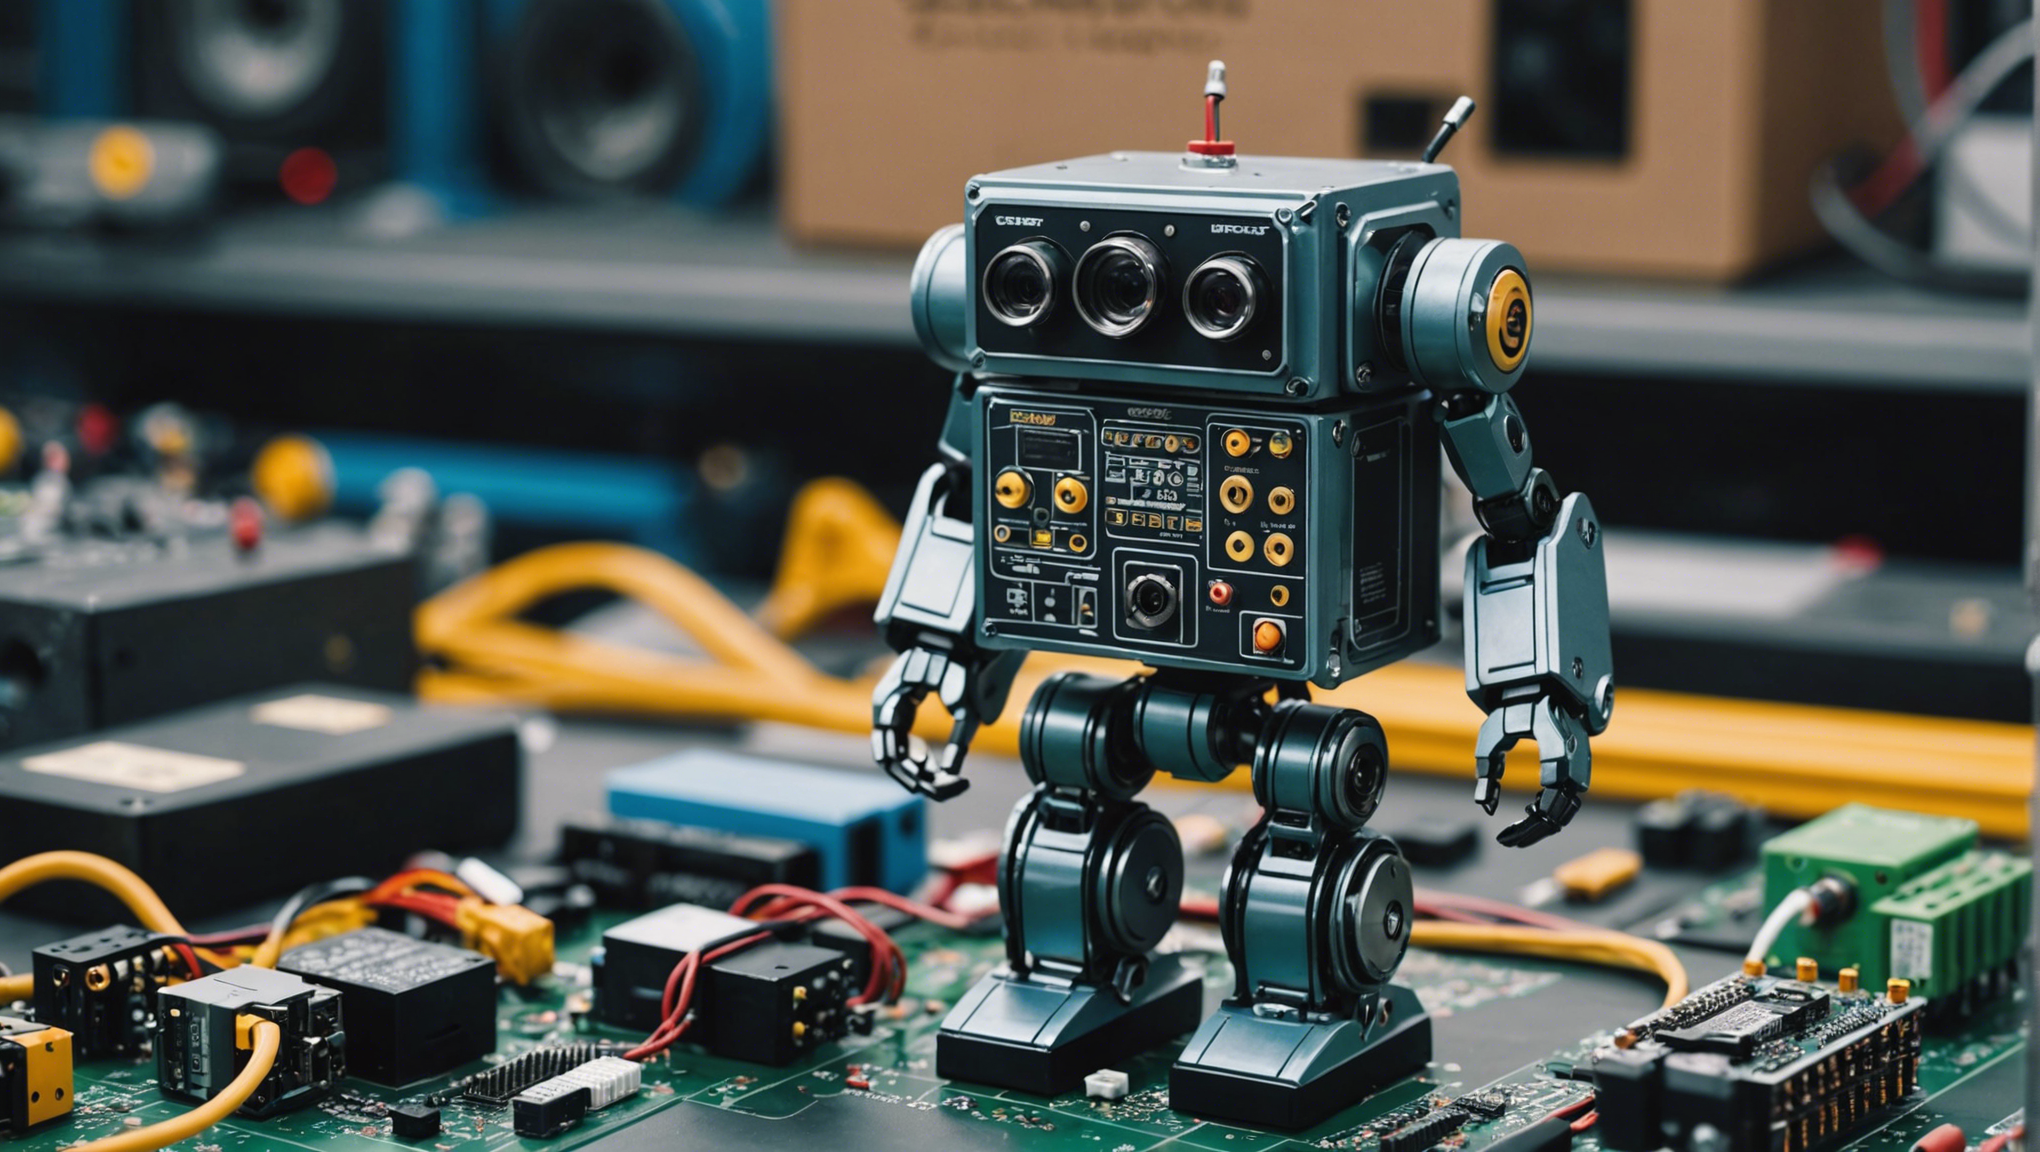 découvrez dans notre guide d'achat 2020 des conseils pour choisir le robot ou les composants électroniques qui correspondent à vos besoins. profitez de nos recommandations pour faire le meilleur choix !